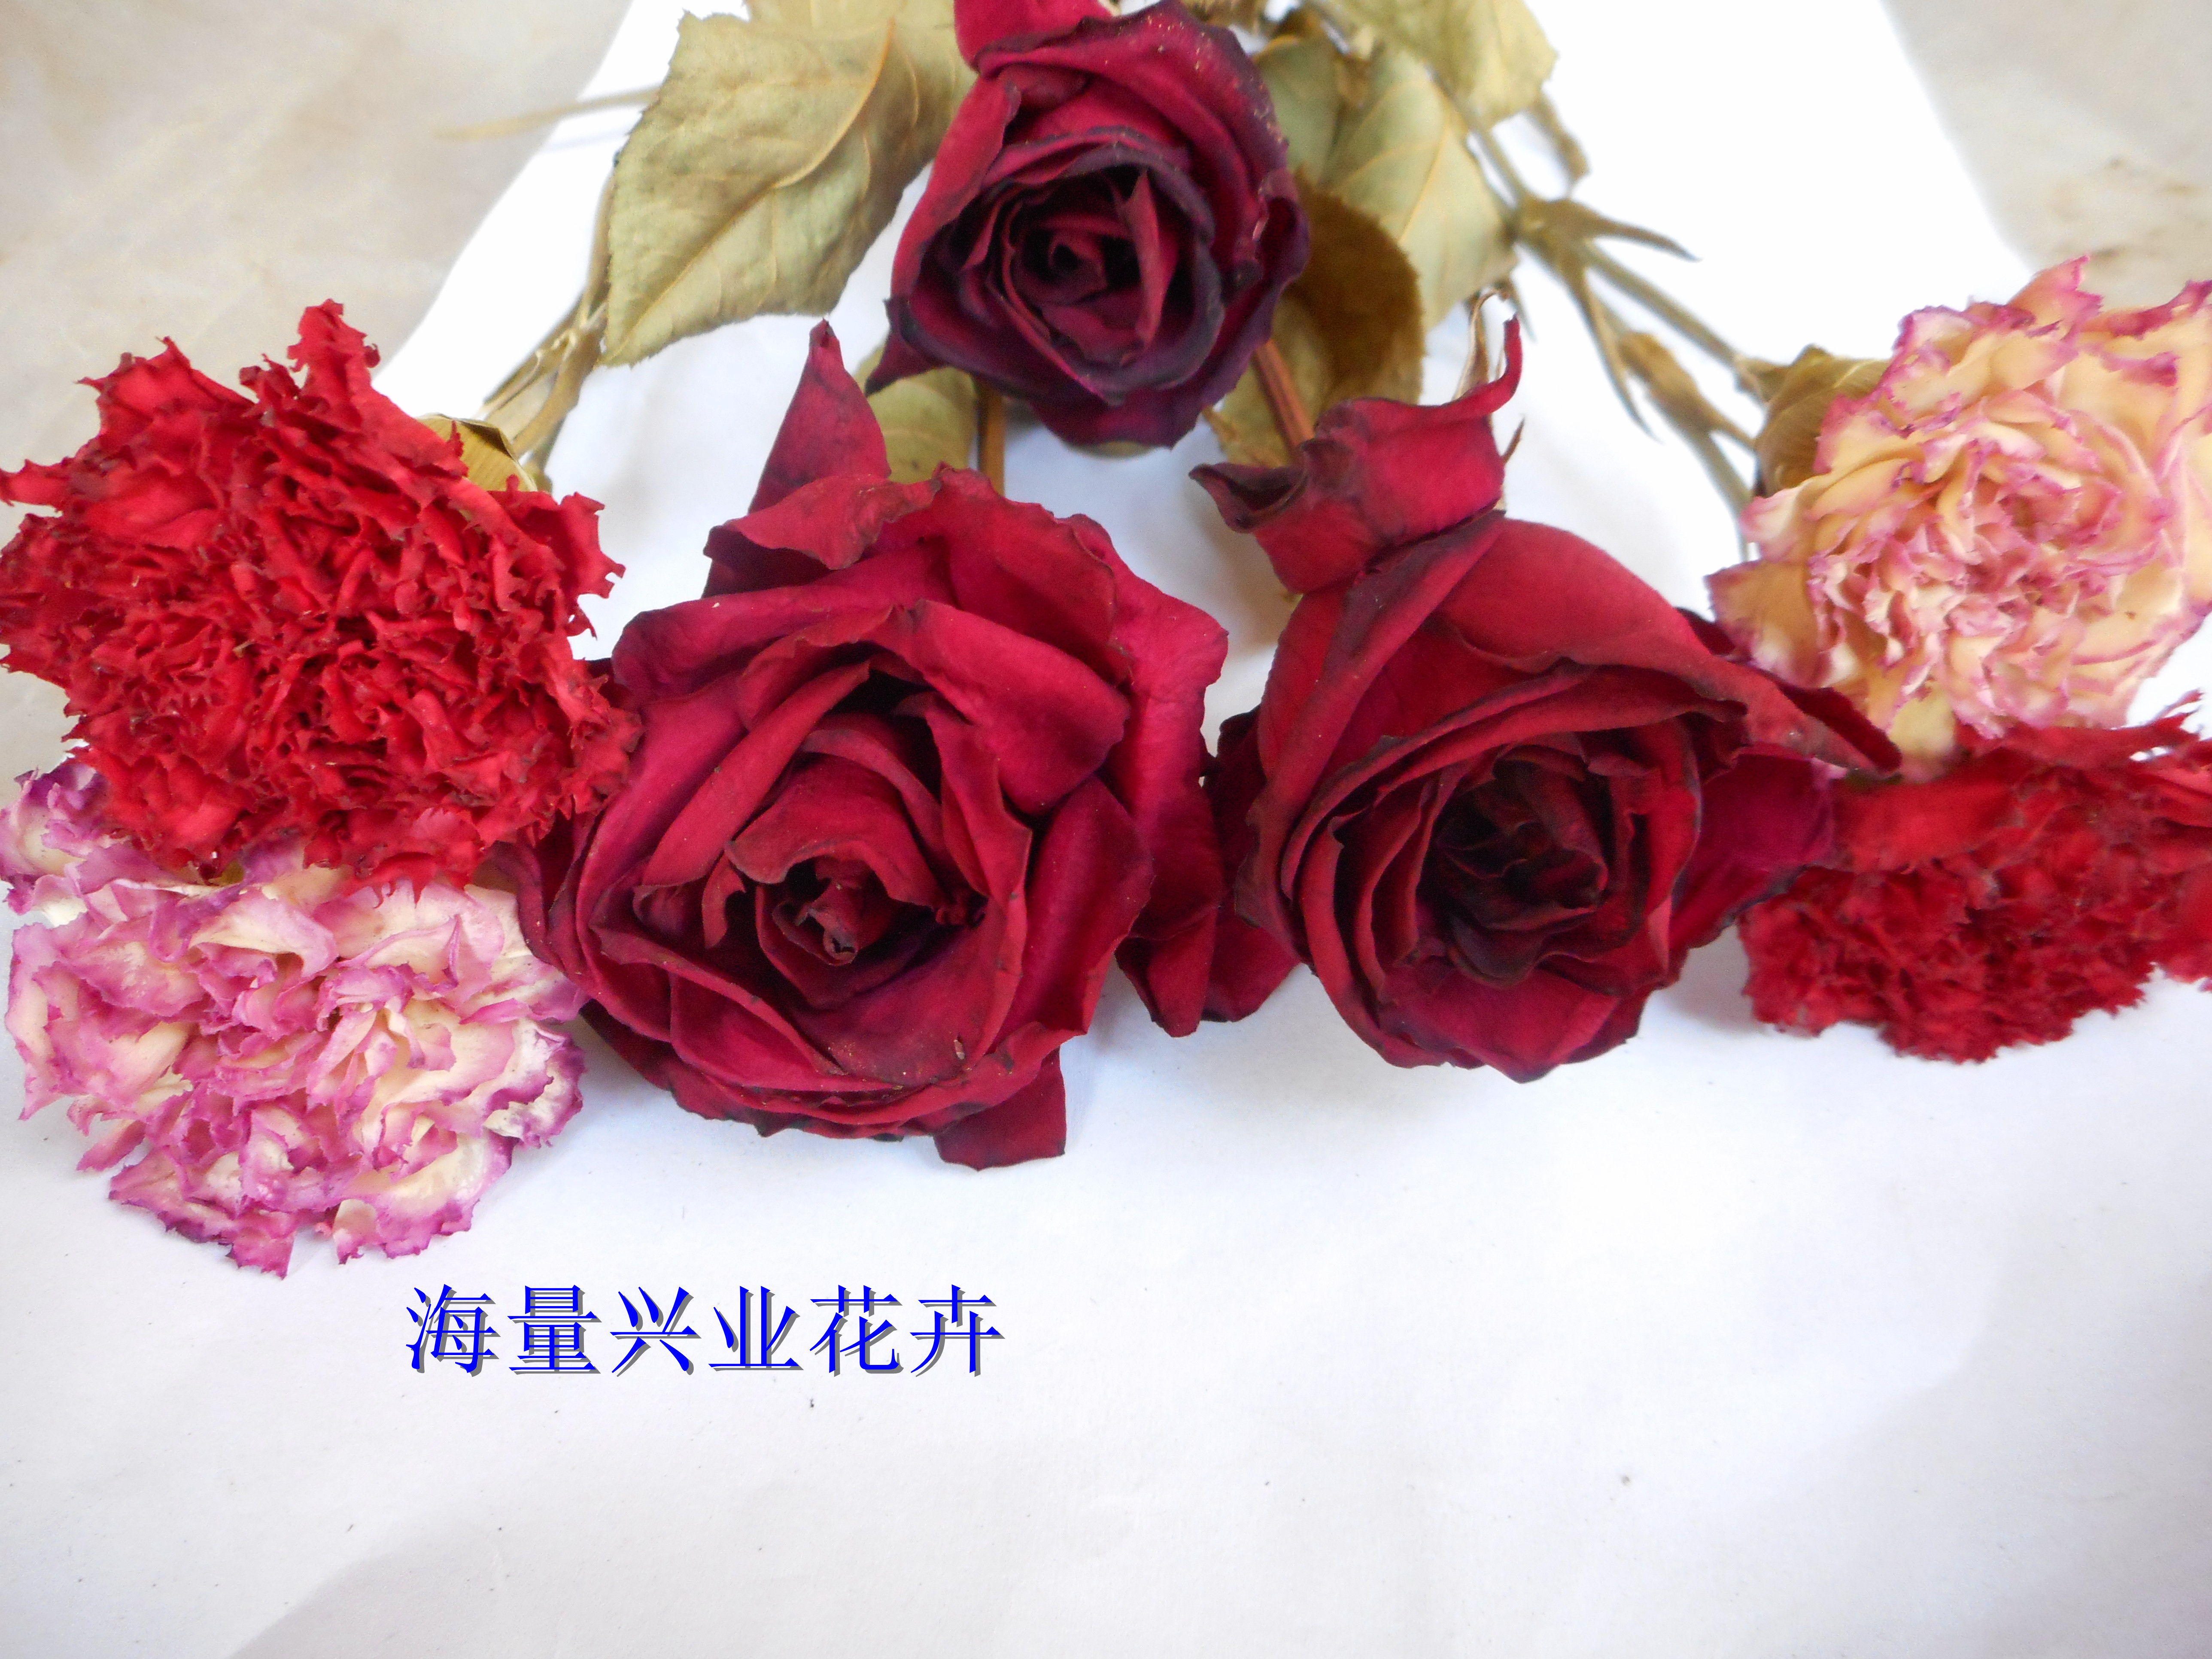 昆明市干月季花蕾供应|玫瑰干花花瓣厂家供应干月季花蕾供应|玫瑰干花花瓣